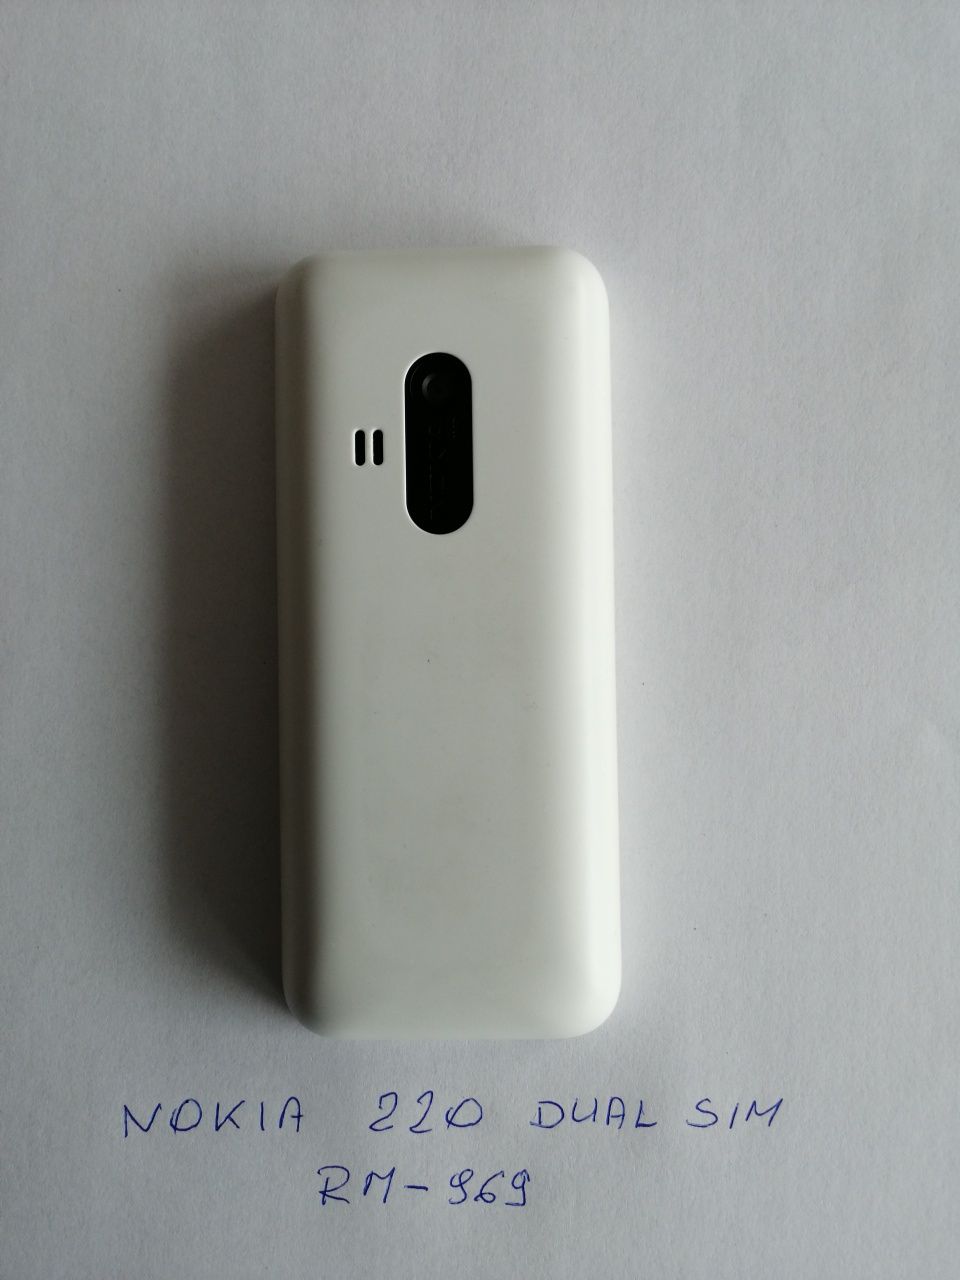 Telefony Nokia dla koneserów